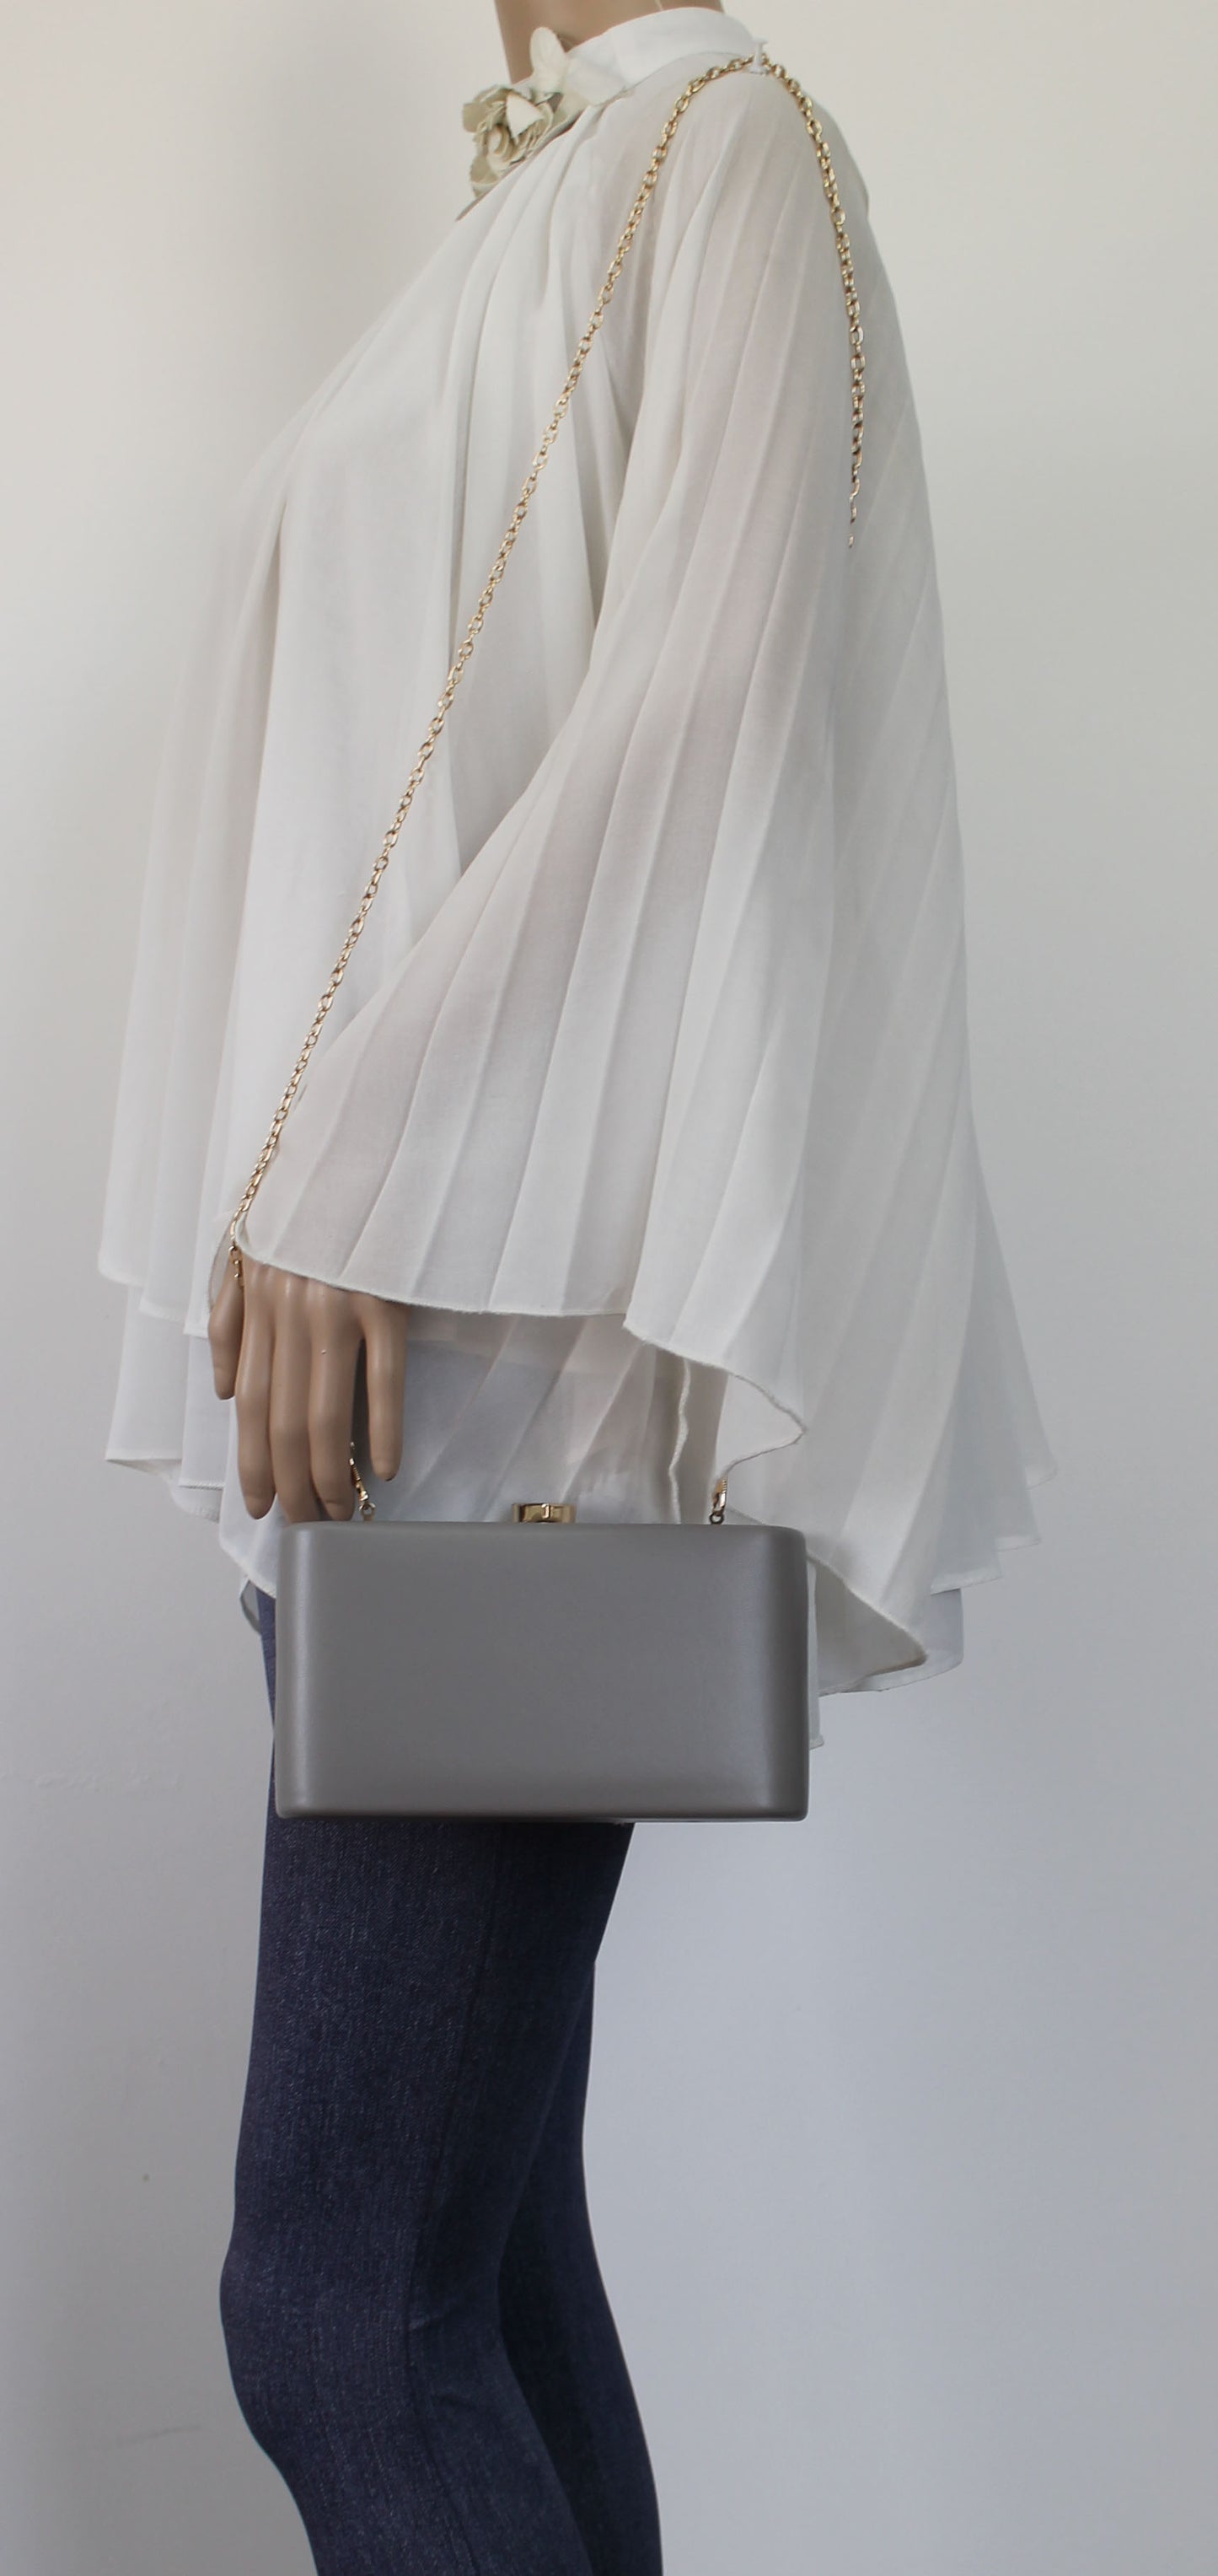 SWANKYSWANS Ruth Clutch Bag Grey Cute Cheap Clutch Bag For Weddings School and Work